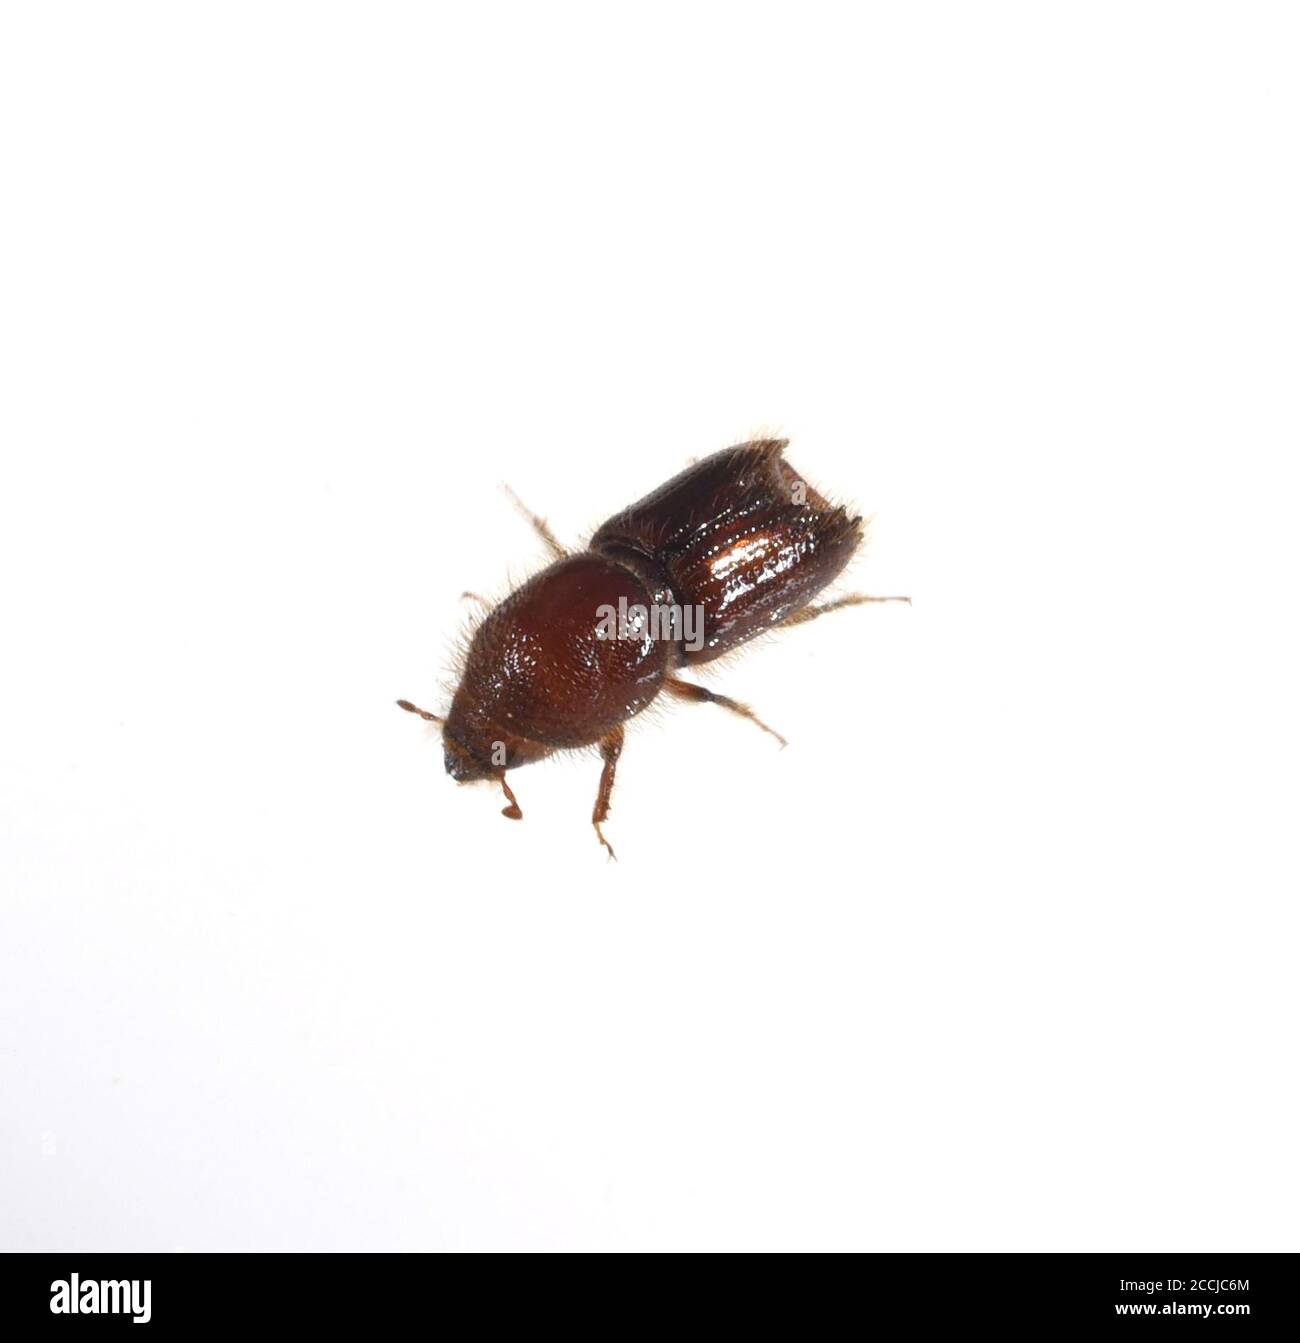 Borkenkaefer sind eine artenreiche Gruppe braun oder schwarz gefärbter Kaefer, von denen sich viele Arten unter der Borke. Bark beetles are a species- Stock Photo